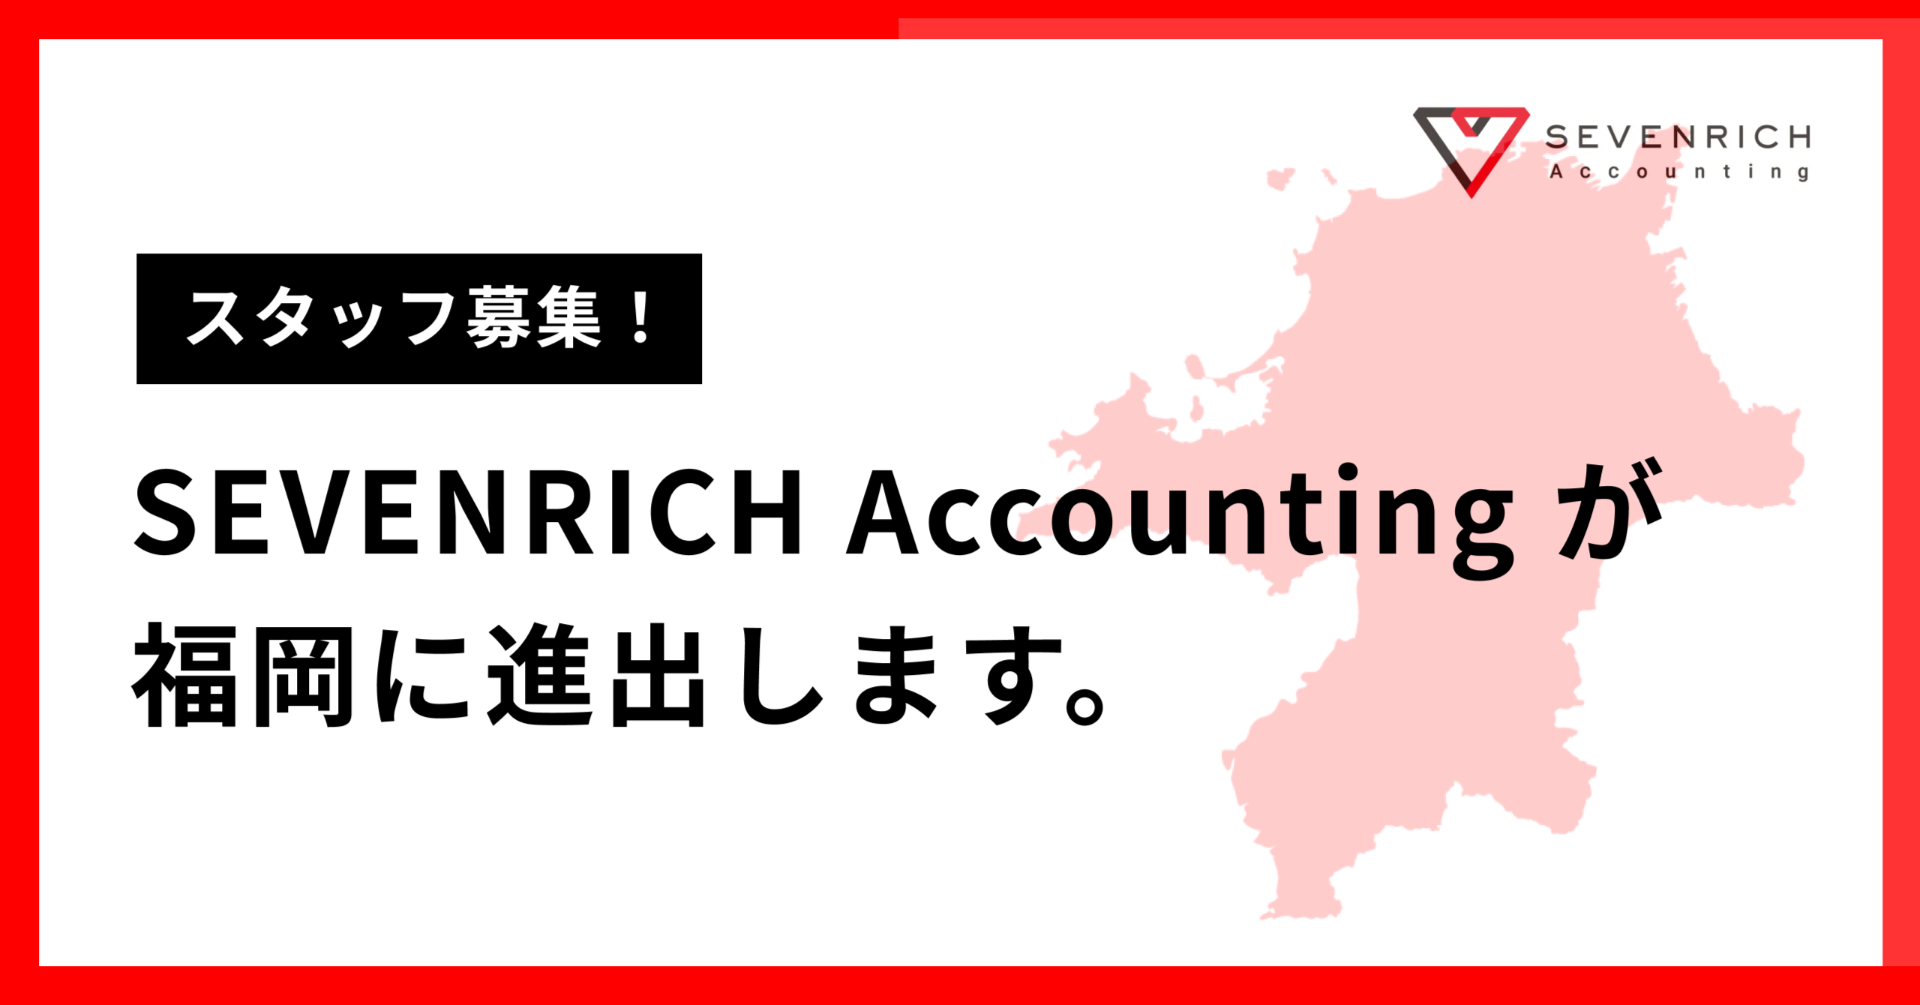 福岡市内に、SEVENRICH Accountingの3つ目の拠点ができました。